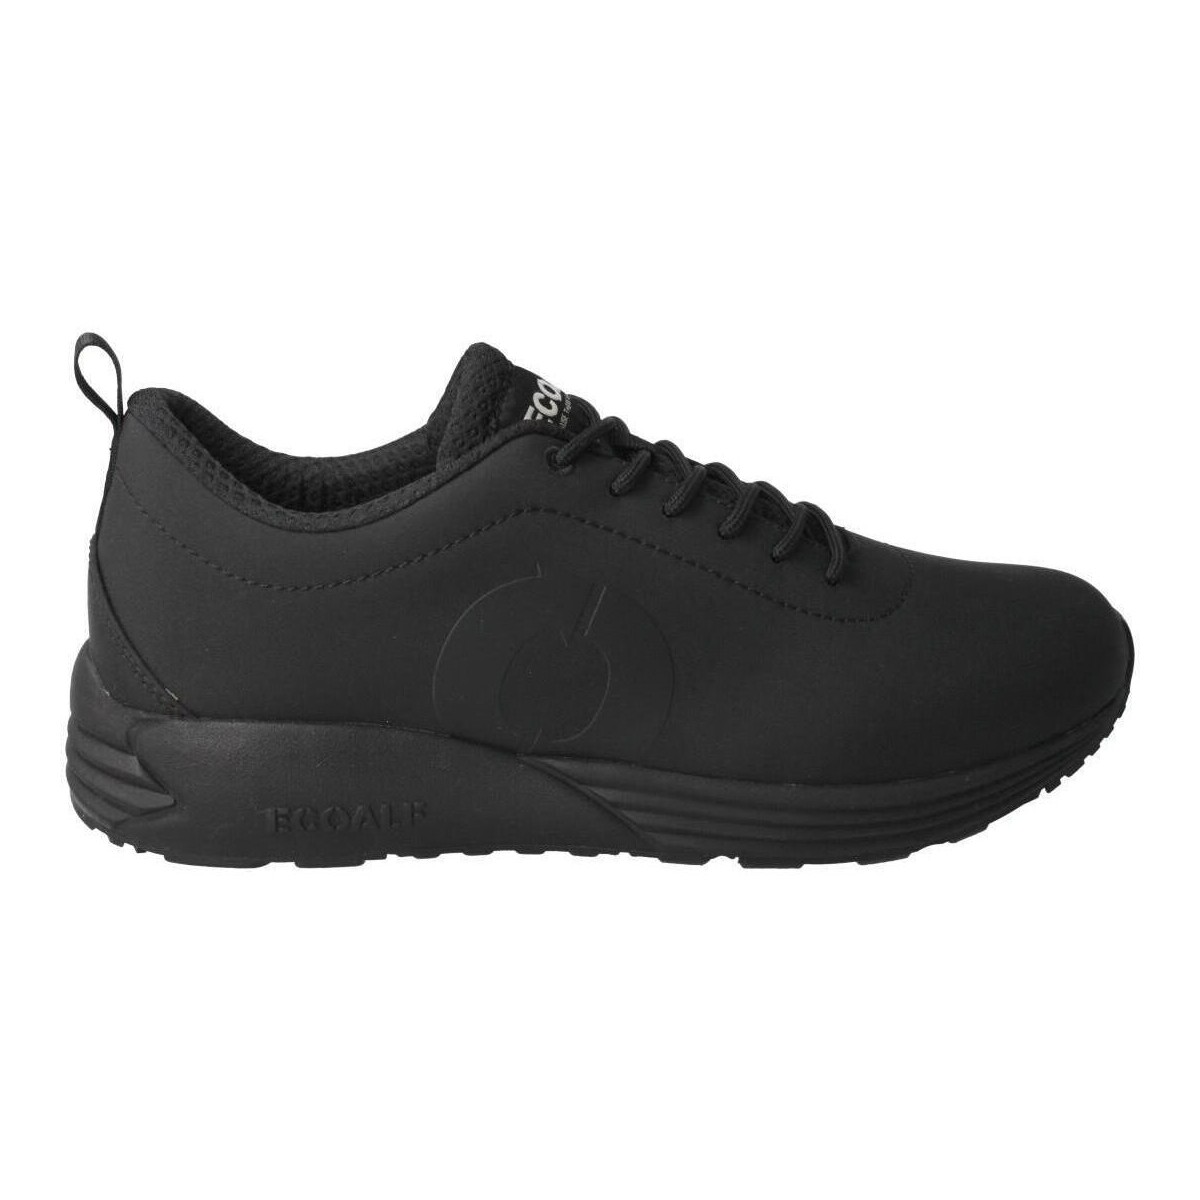 Παπούτσια Χαμηλά Sneakers Ecoalf  Black